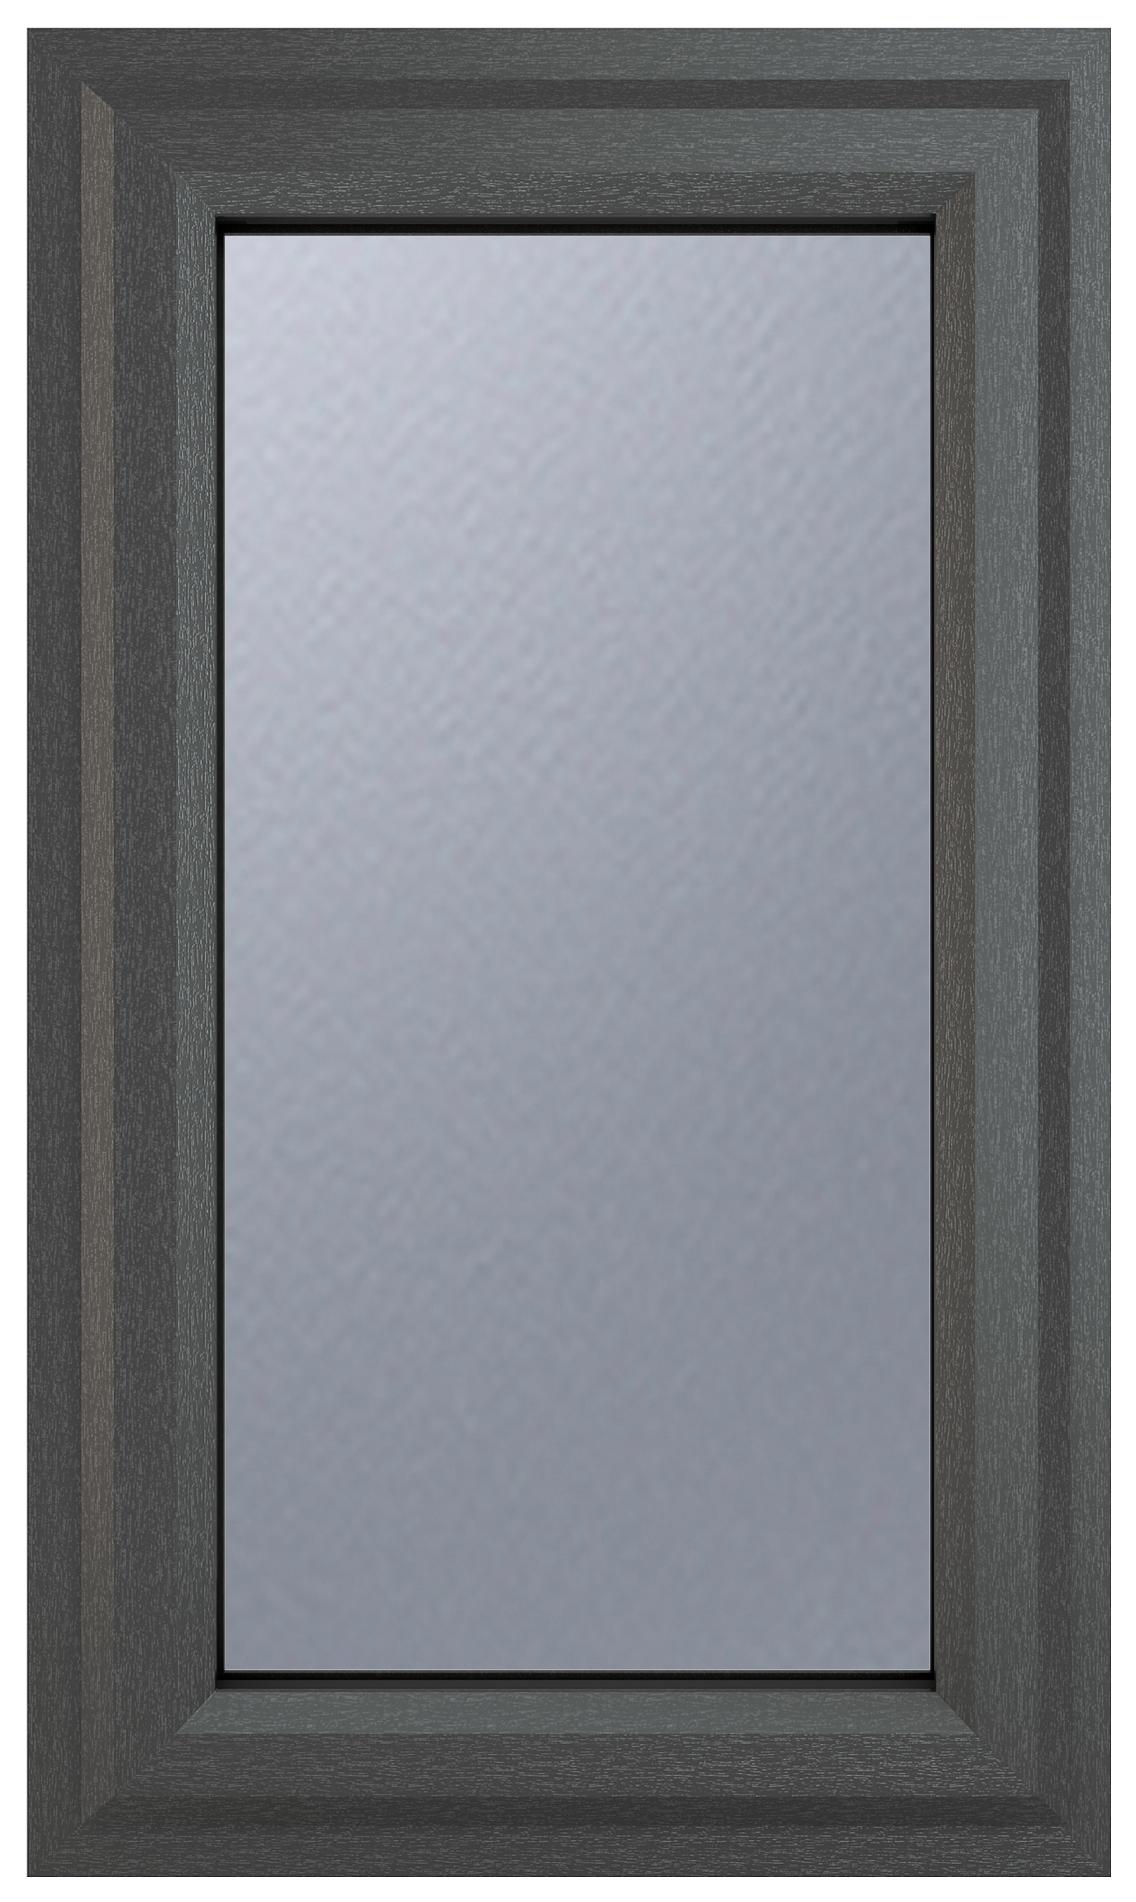 Crystal uPVC Grey Top Opener Obscure Double Glazed Window - 610 x 1040mm